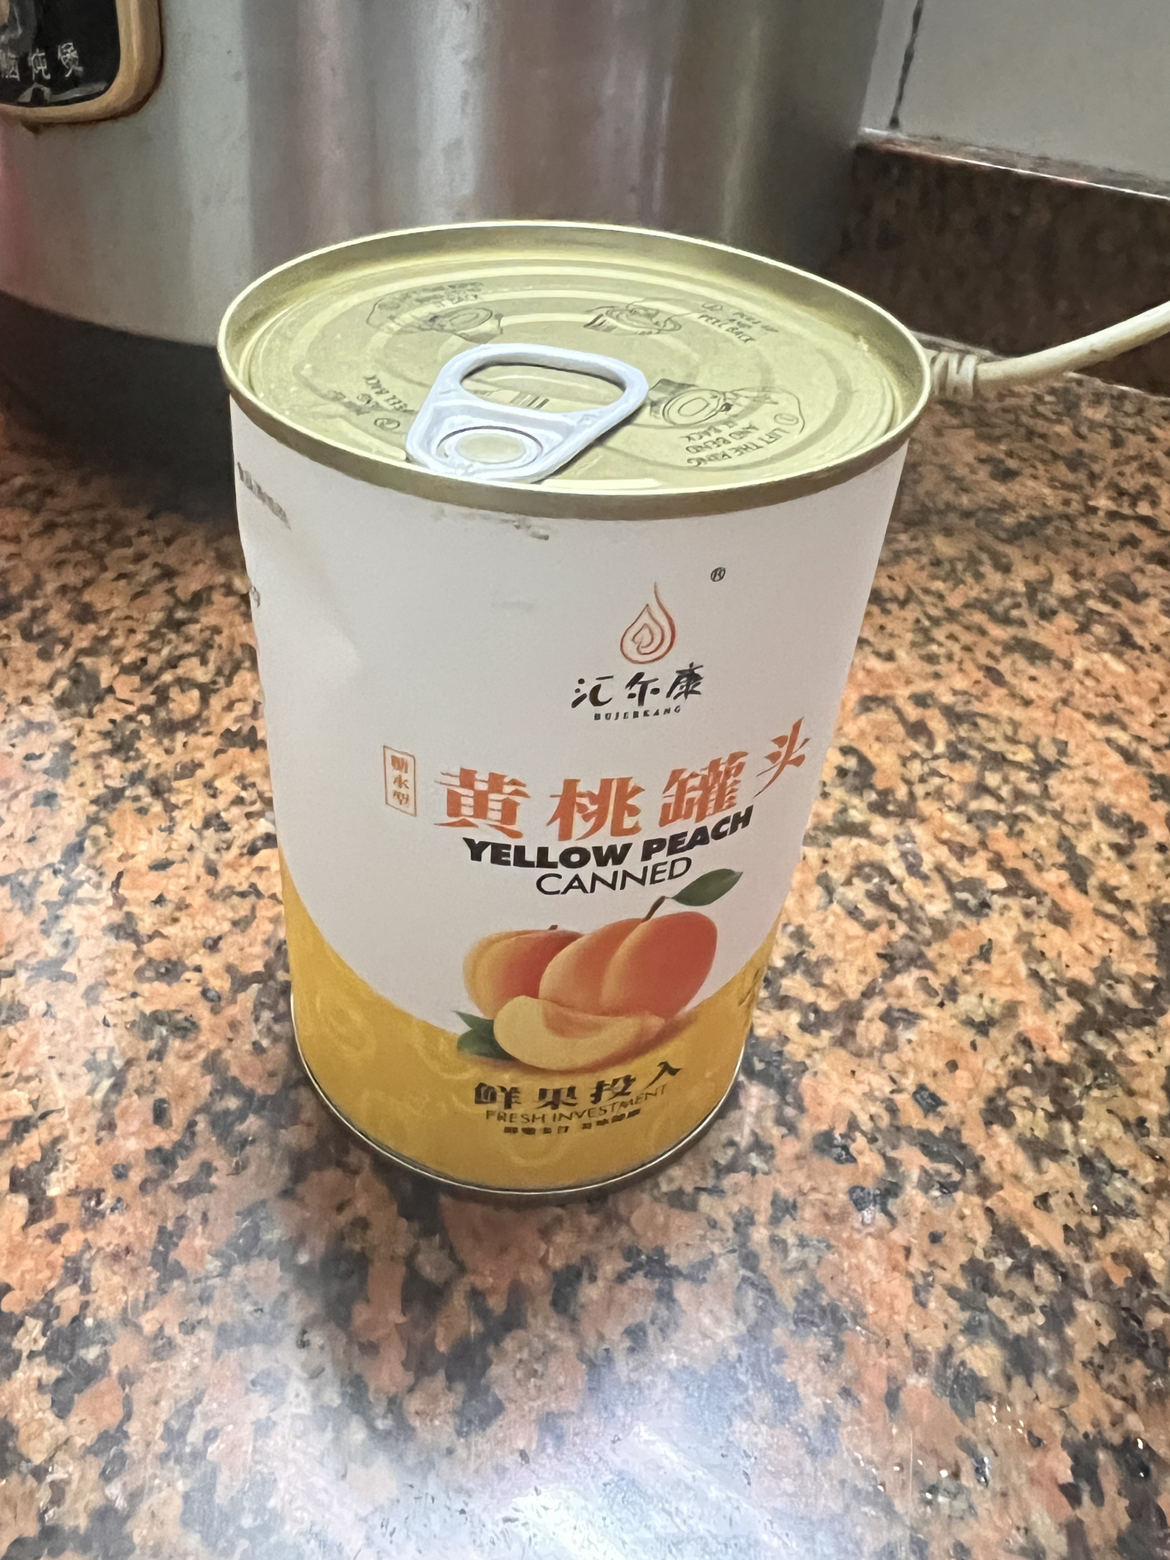 汇尔康 果汁黄桃水果糖水罐头425gx1罐 对开新鲜水果罐头即食休闲零食特产晒单图